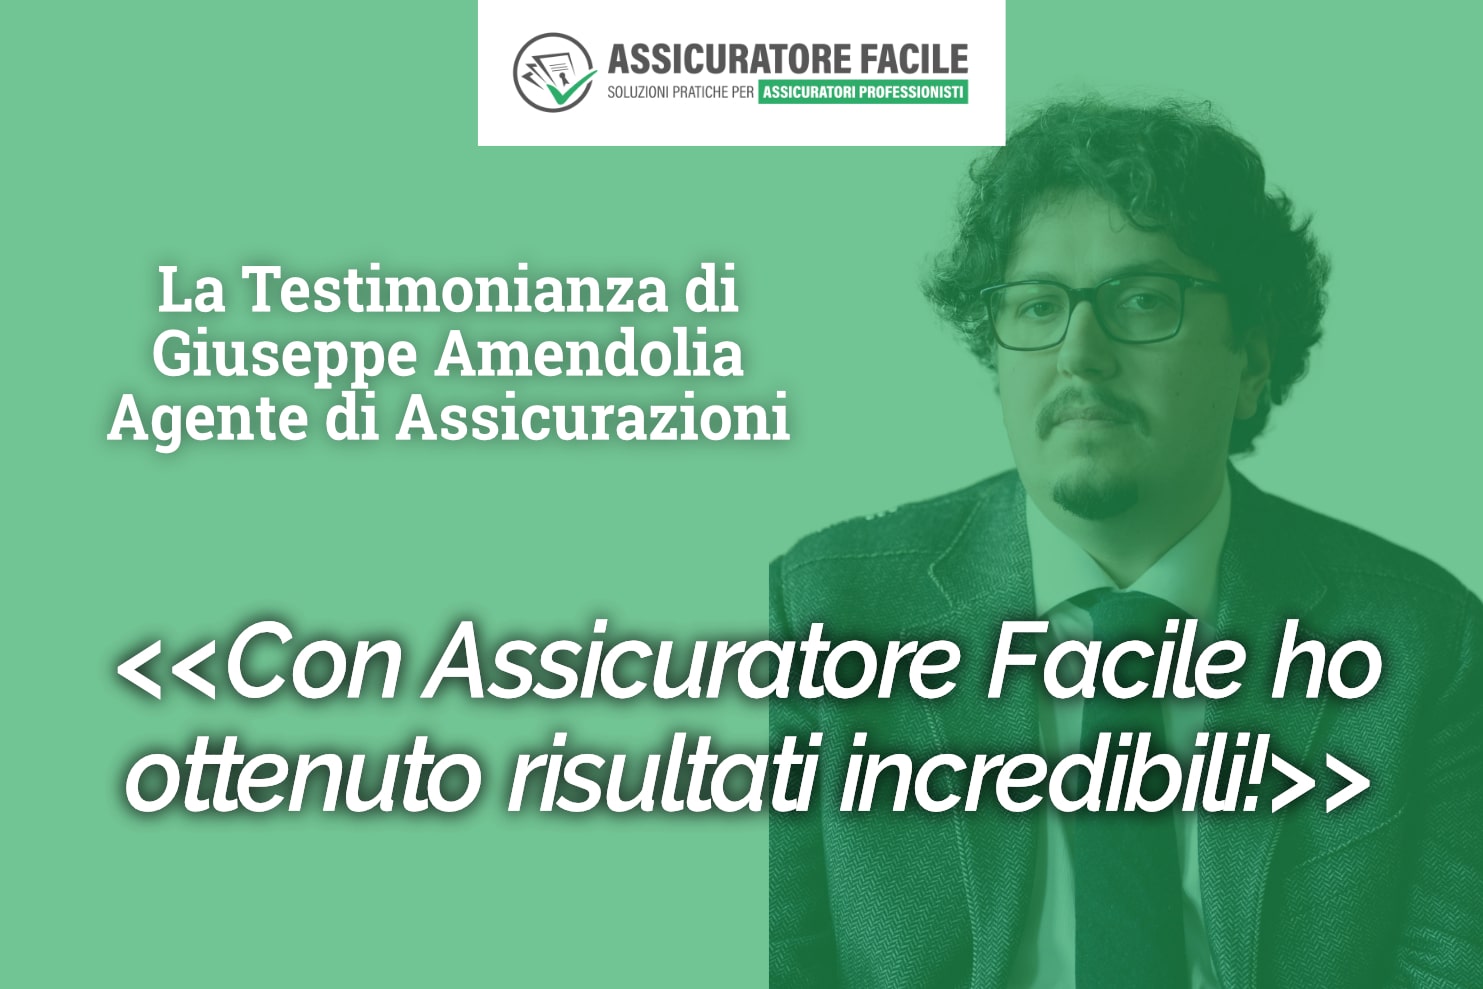 Giuseppe Amendolia assicuratore professionista certificato Scuola Assicuratore Facile